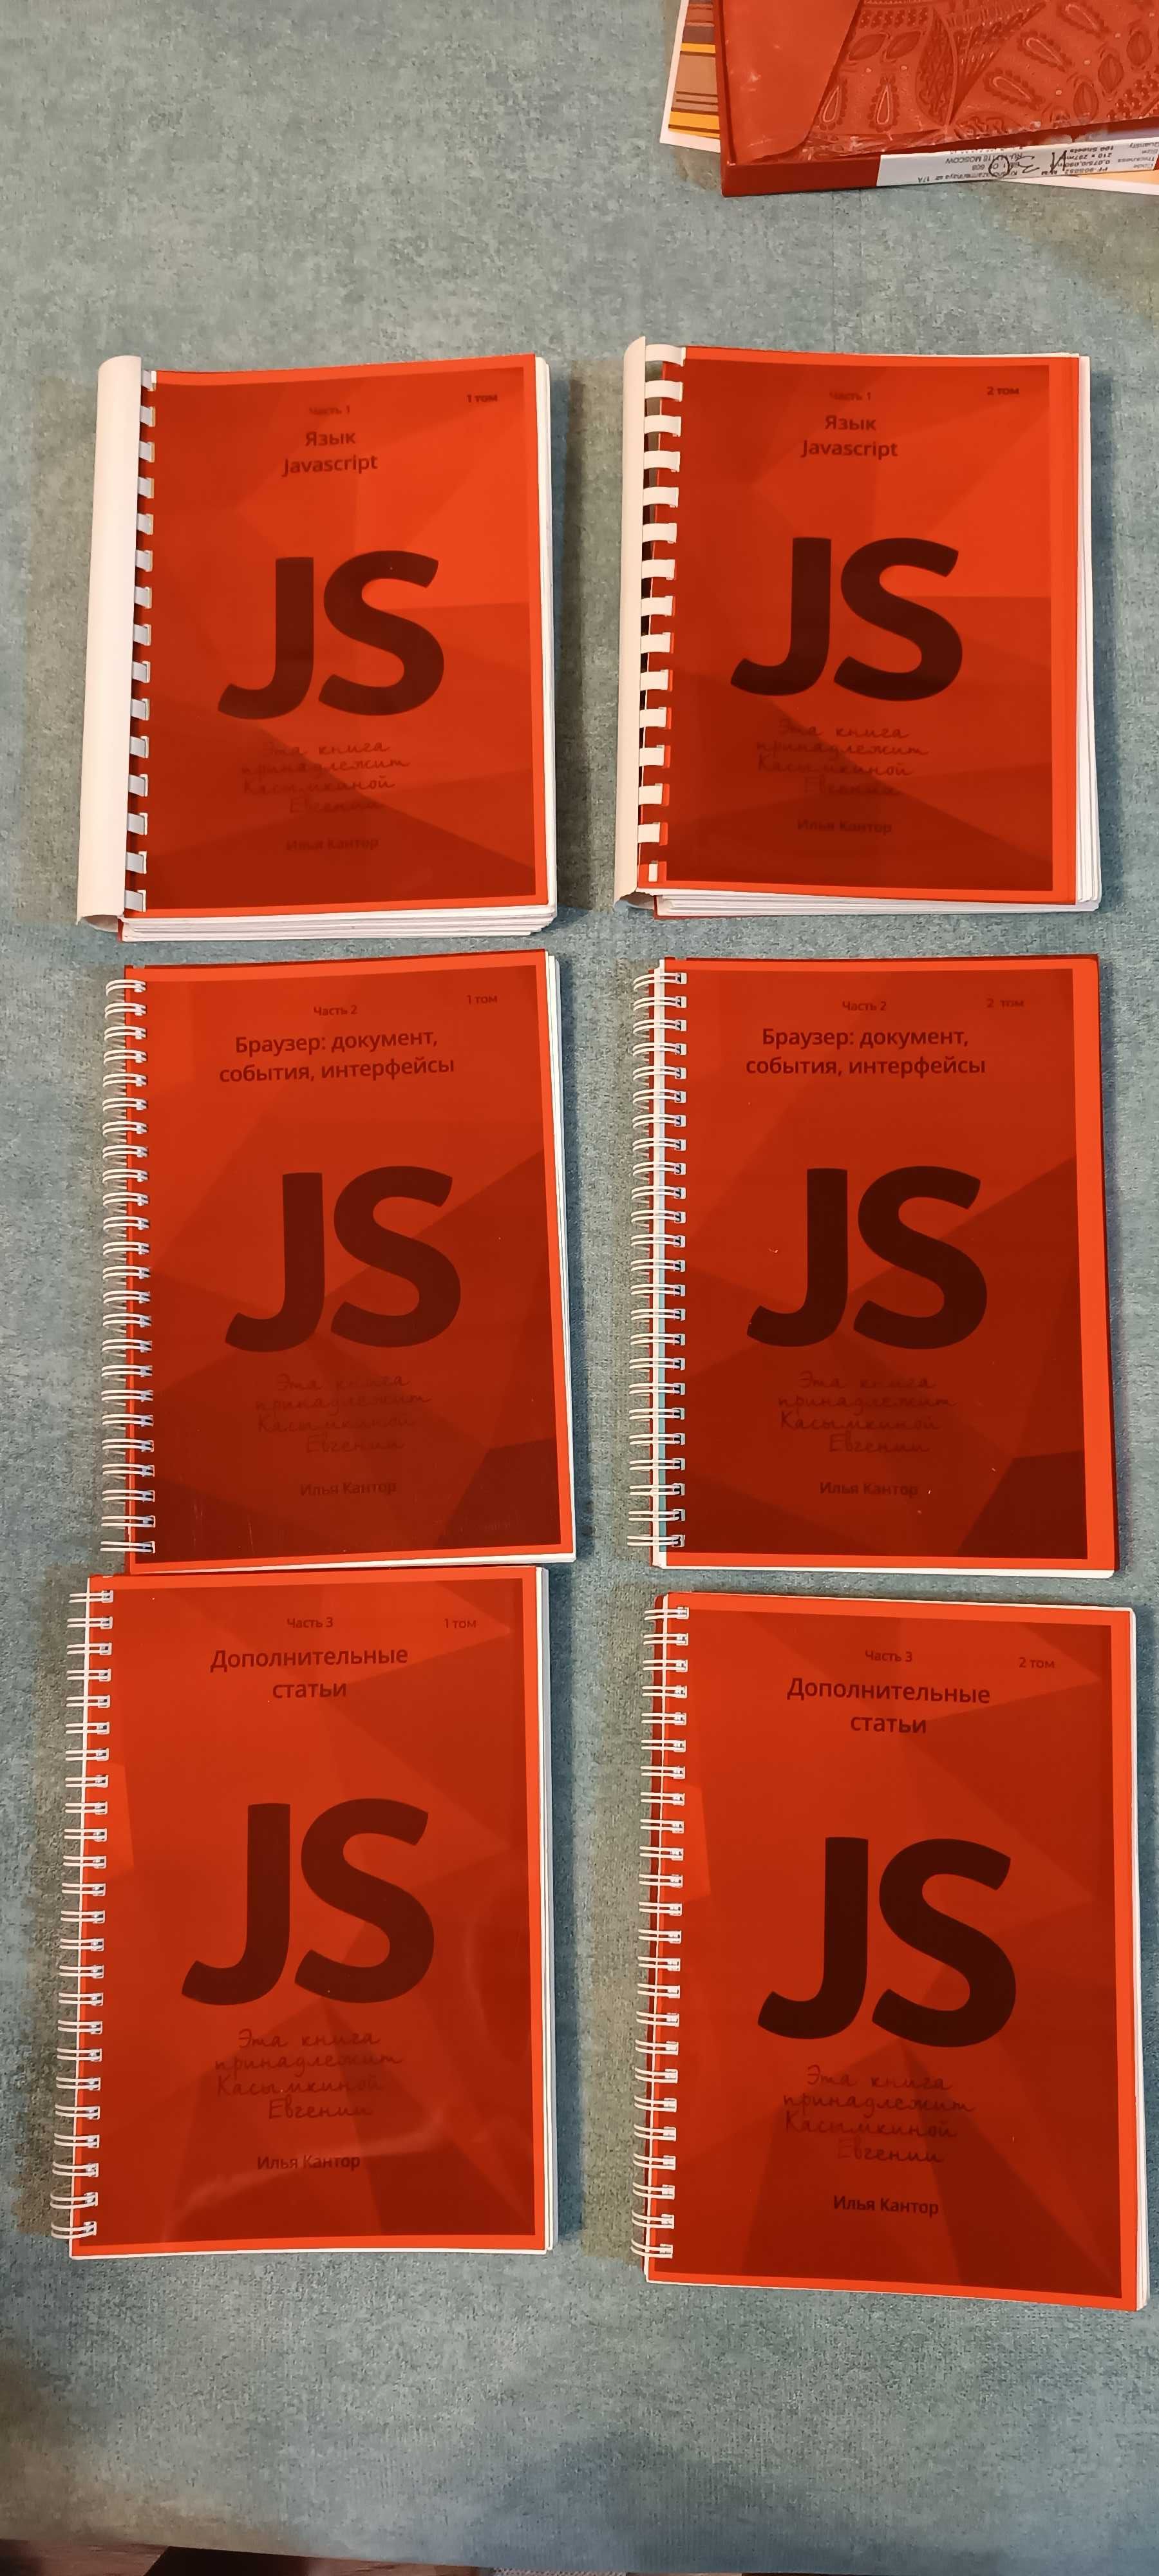 Продам книги по Джава Скрипту Java Script JS 6 томов